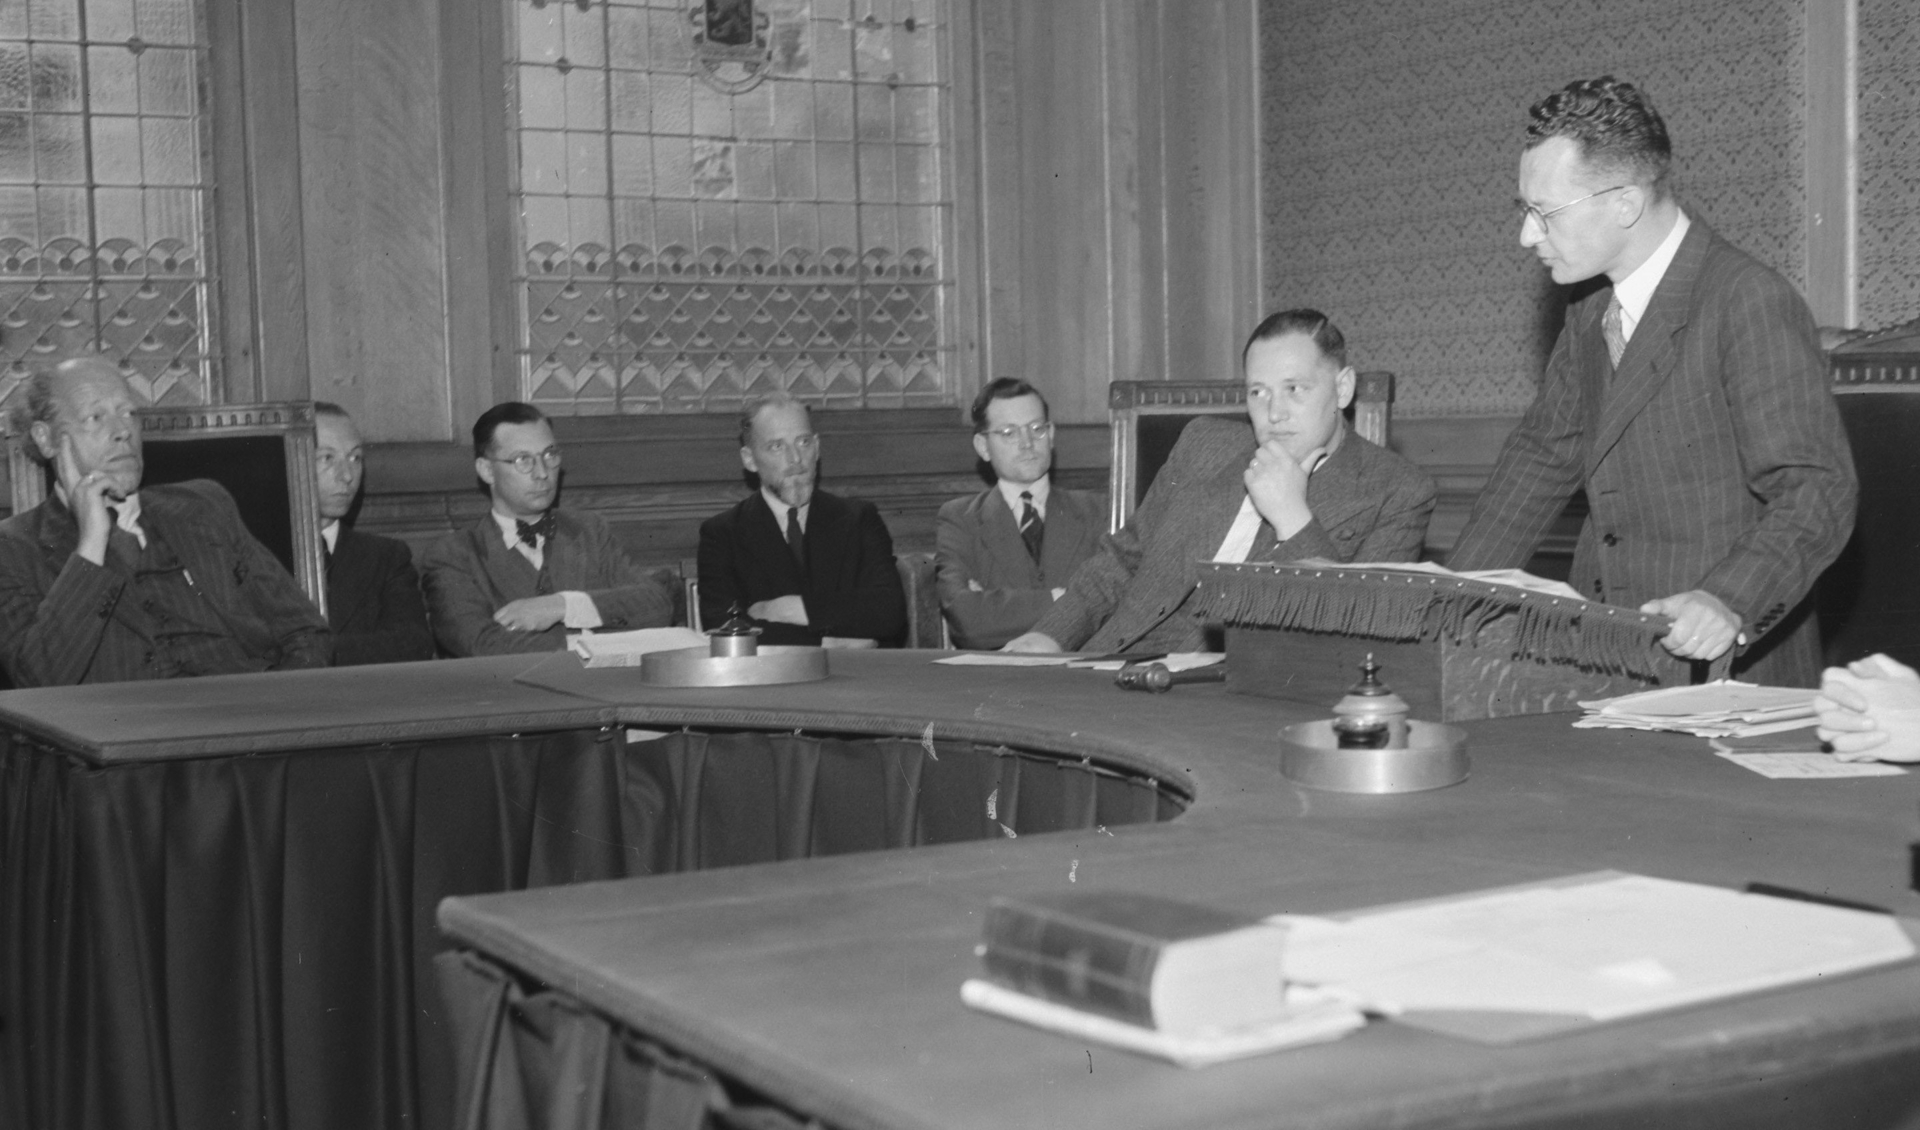 Foto genomen tijdens de eerste zitting van het Tribunaal in s-Hertogenbosch op 26 juli 1945 met rechts op de foto de president van het Tribunaal mr. Harry Holla.